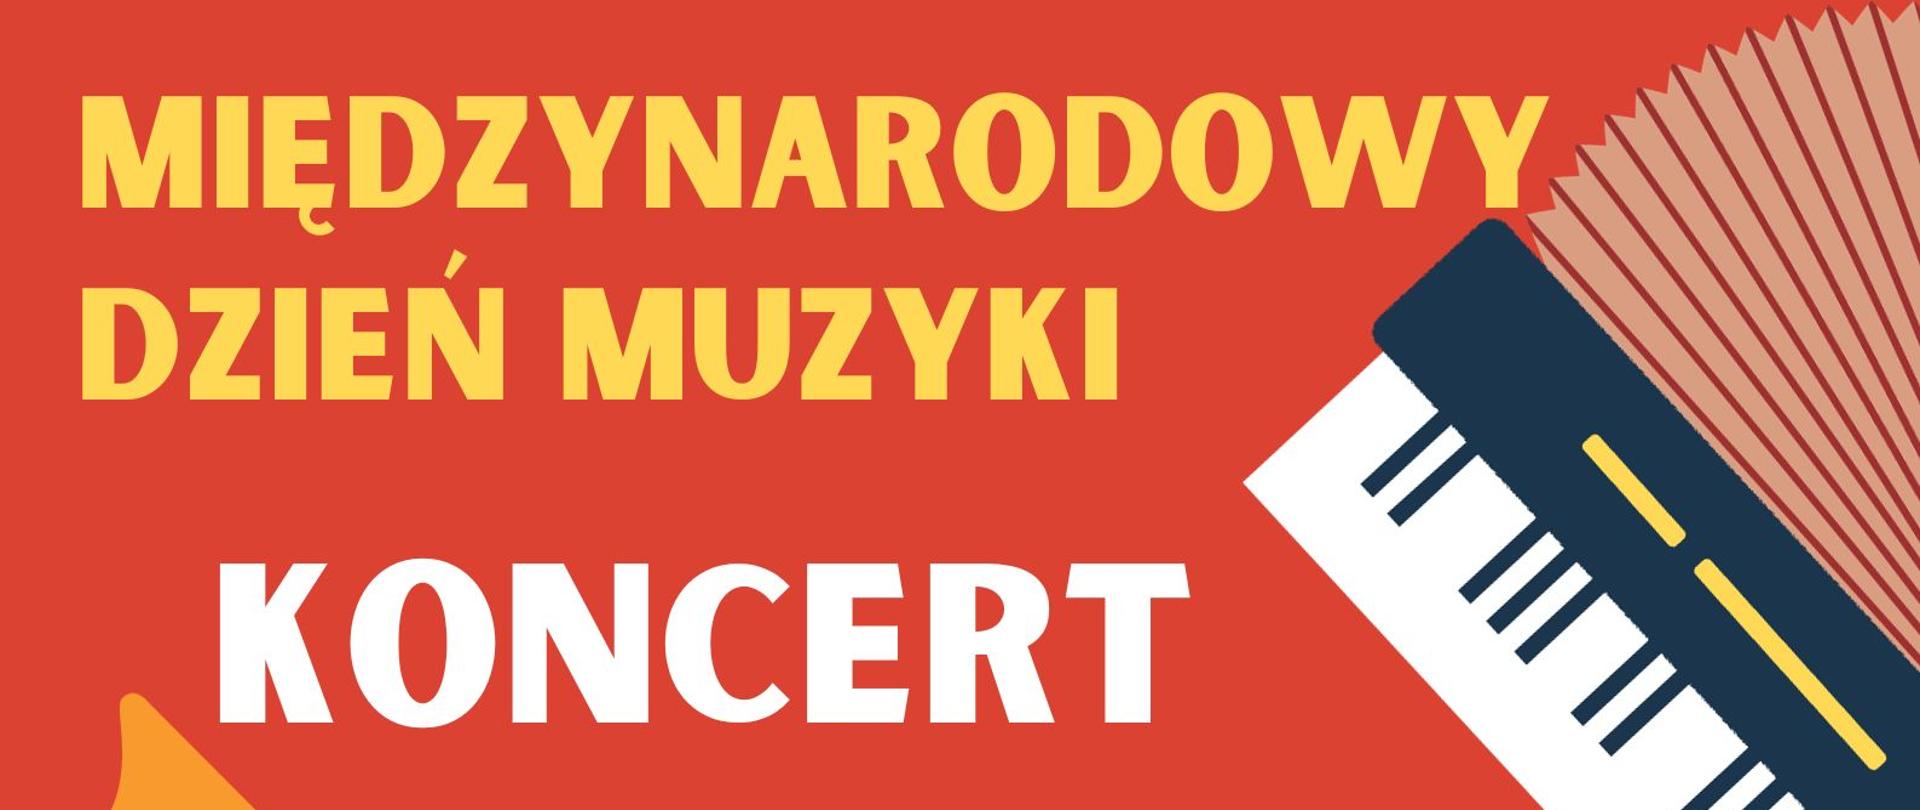 Plakat z informacją o koncercie z okazji Międzynarodowego Dnia Muzyki, na pomarańczowym tle instrumenty muzyczne